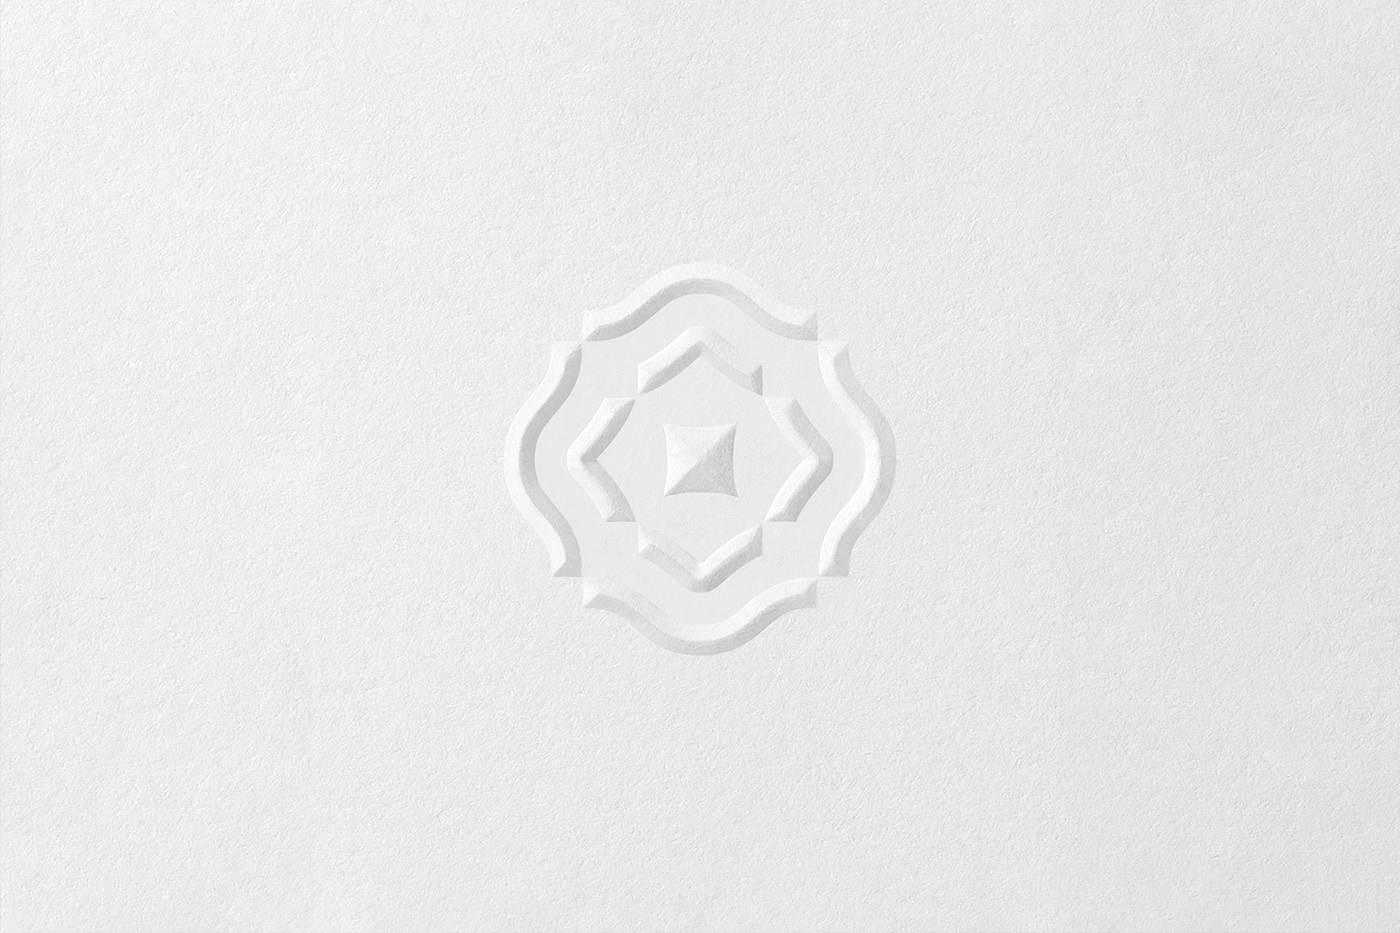 Blind emboss logo print